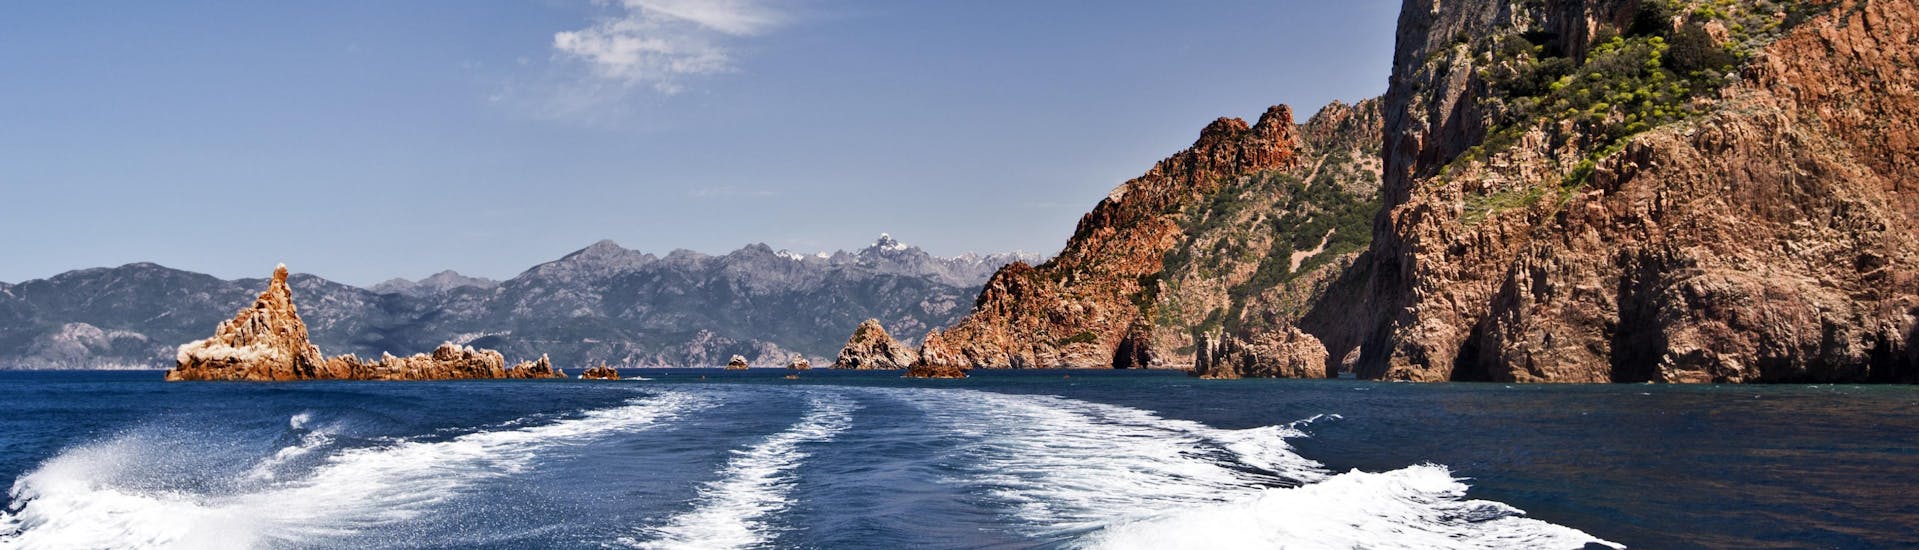 Blick vom Heck eines Bootes während einer Bootstour zum beeindruckenden Capo Rosso an der Westküste Korsikas.